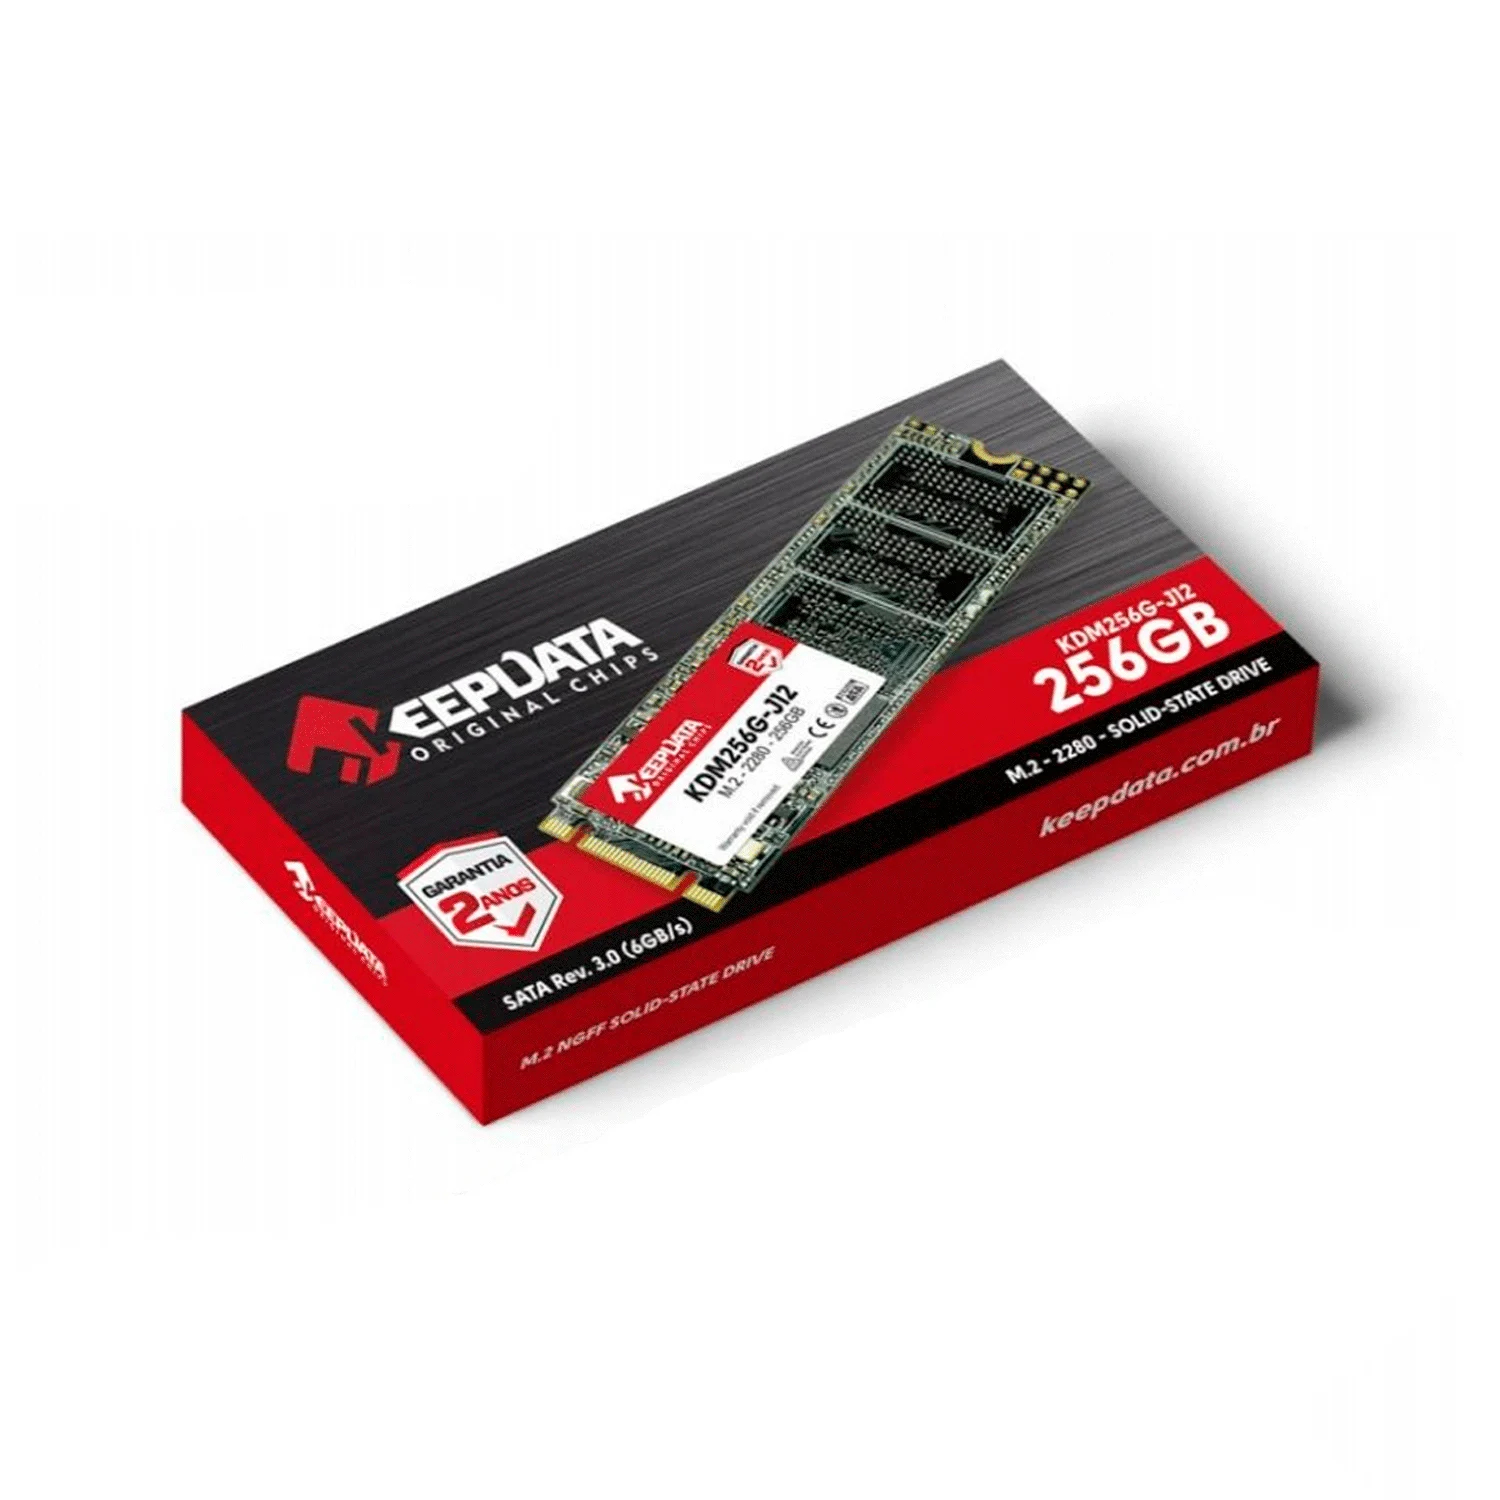 SSD M.2 Keepdata 256GB SATA 3 - KDM256G-J12